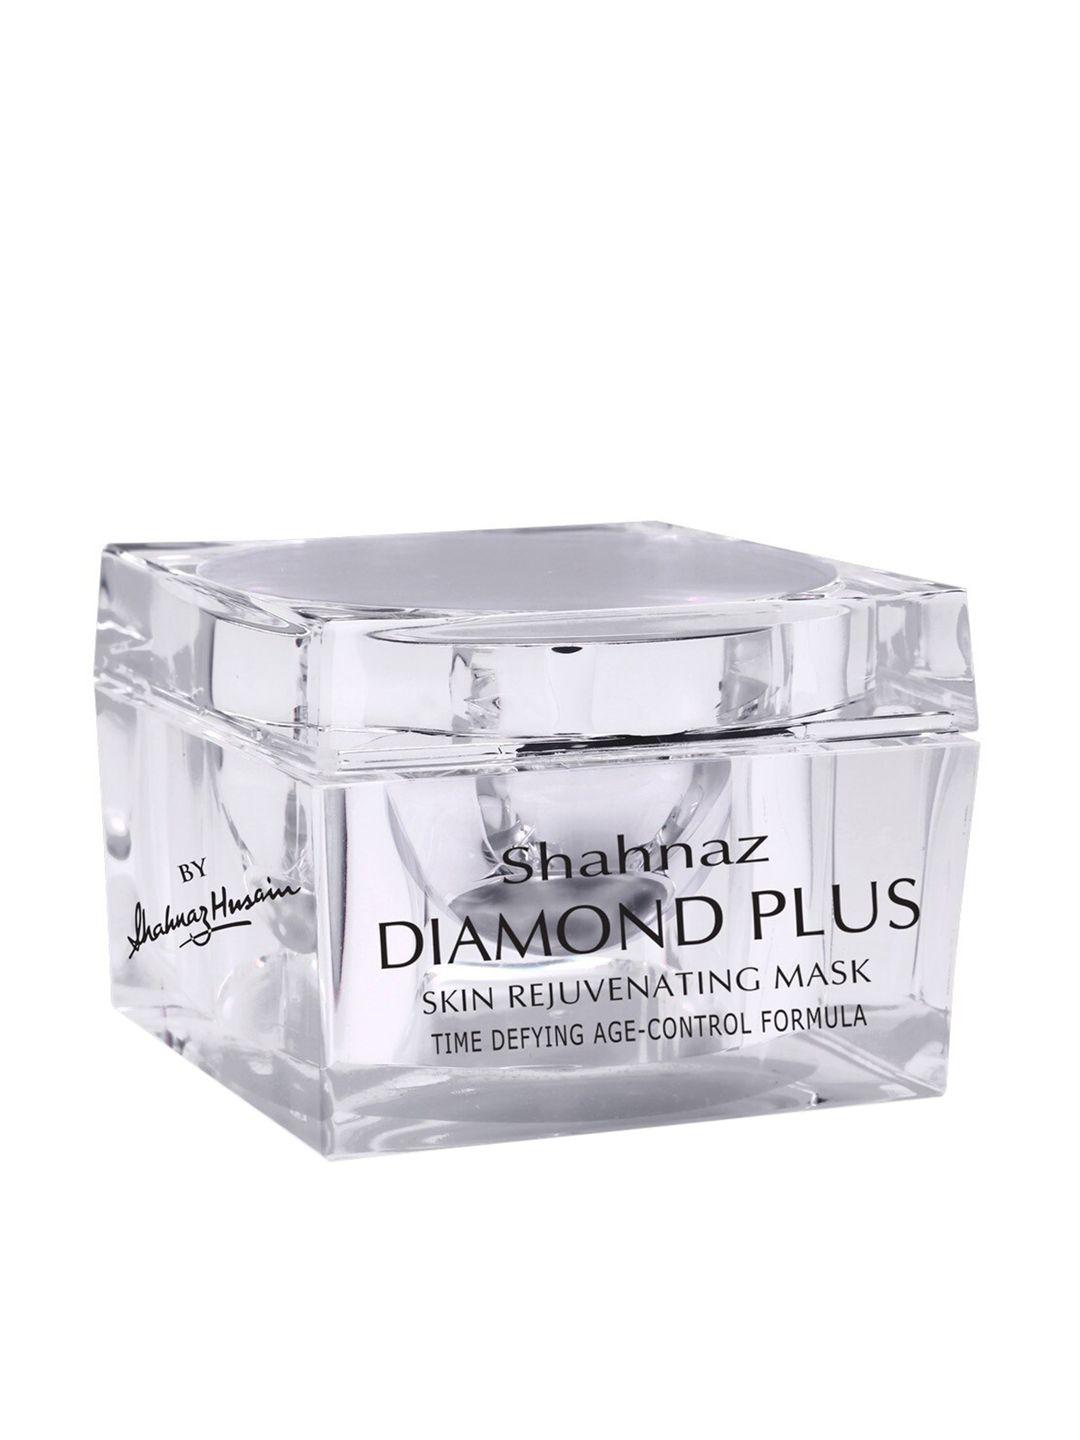 shahnaz husain diamond plus skin rejuvenating mask 50g